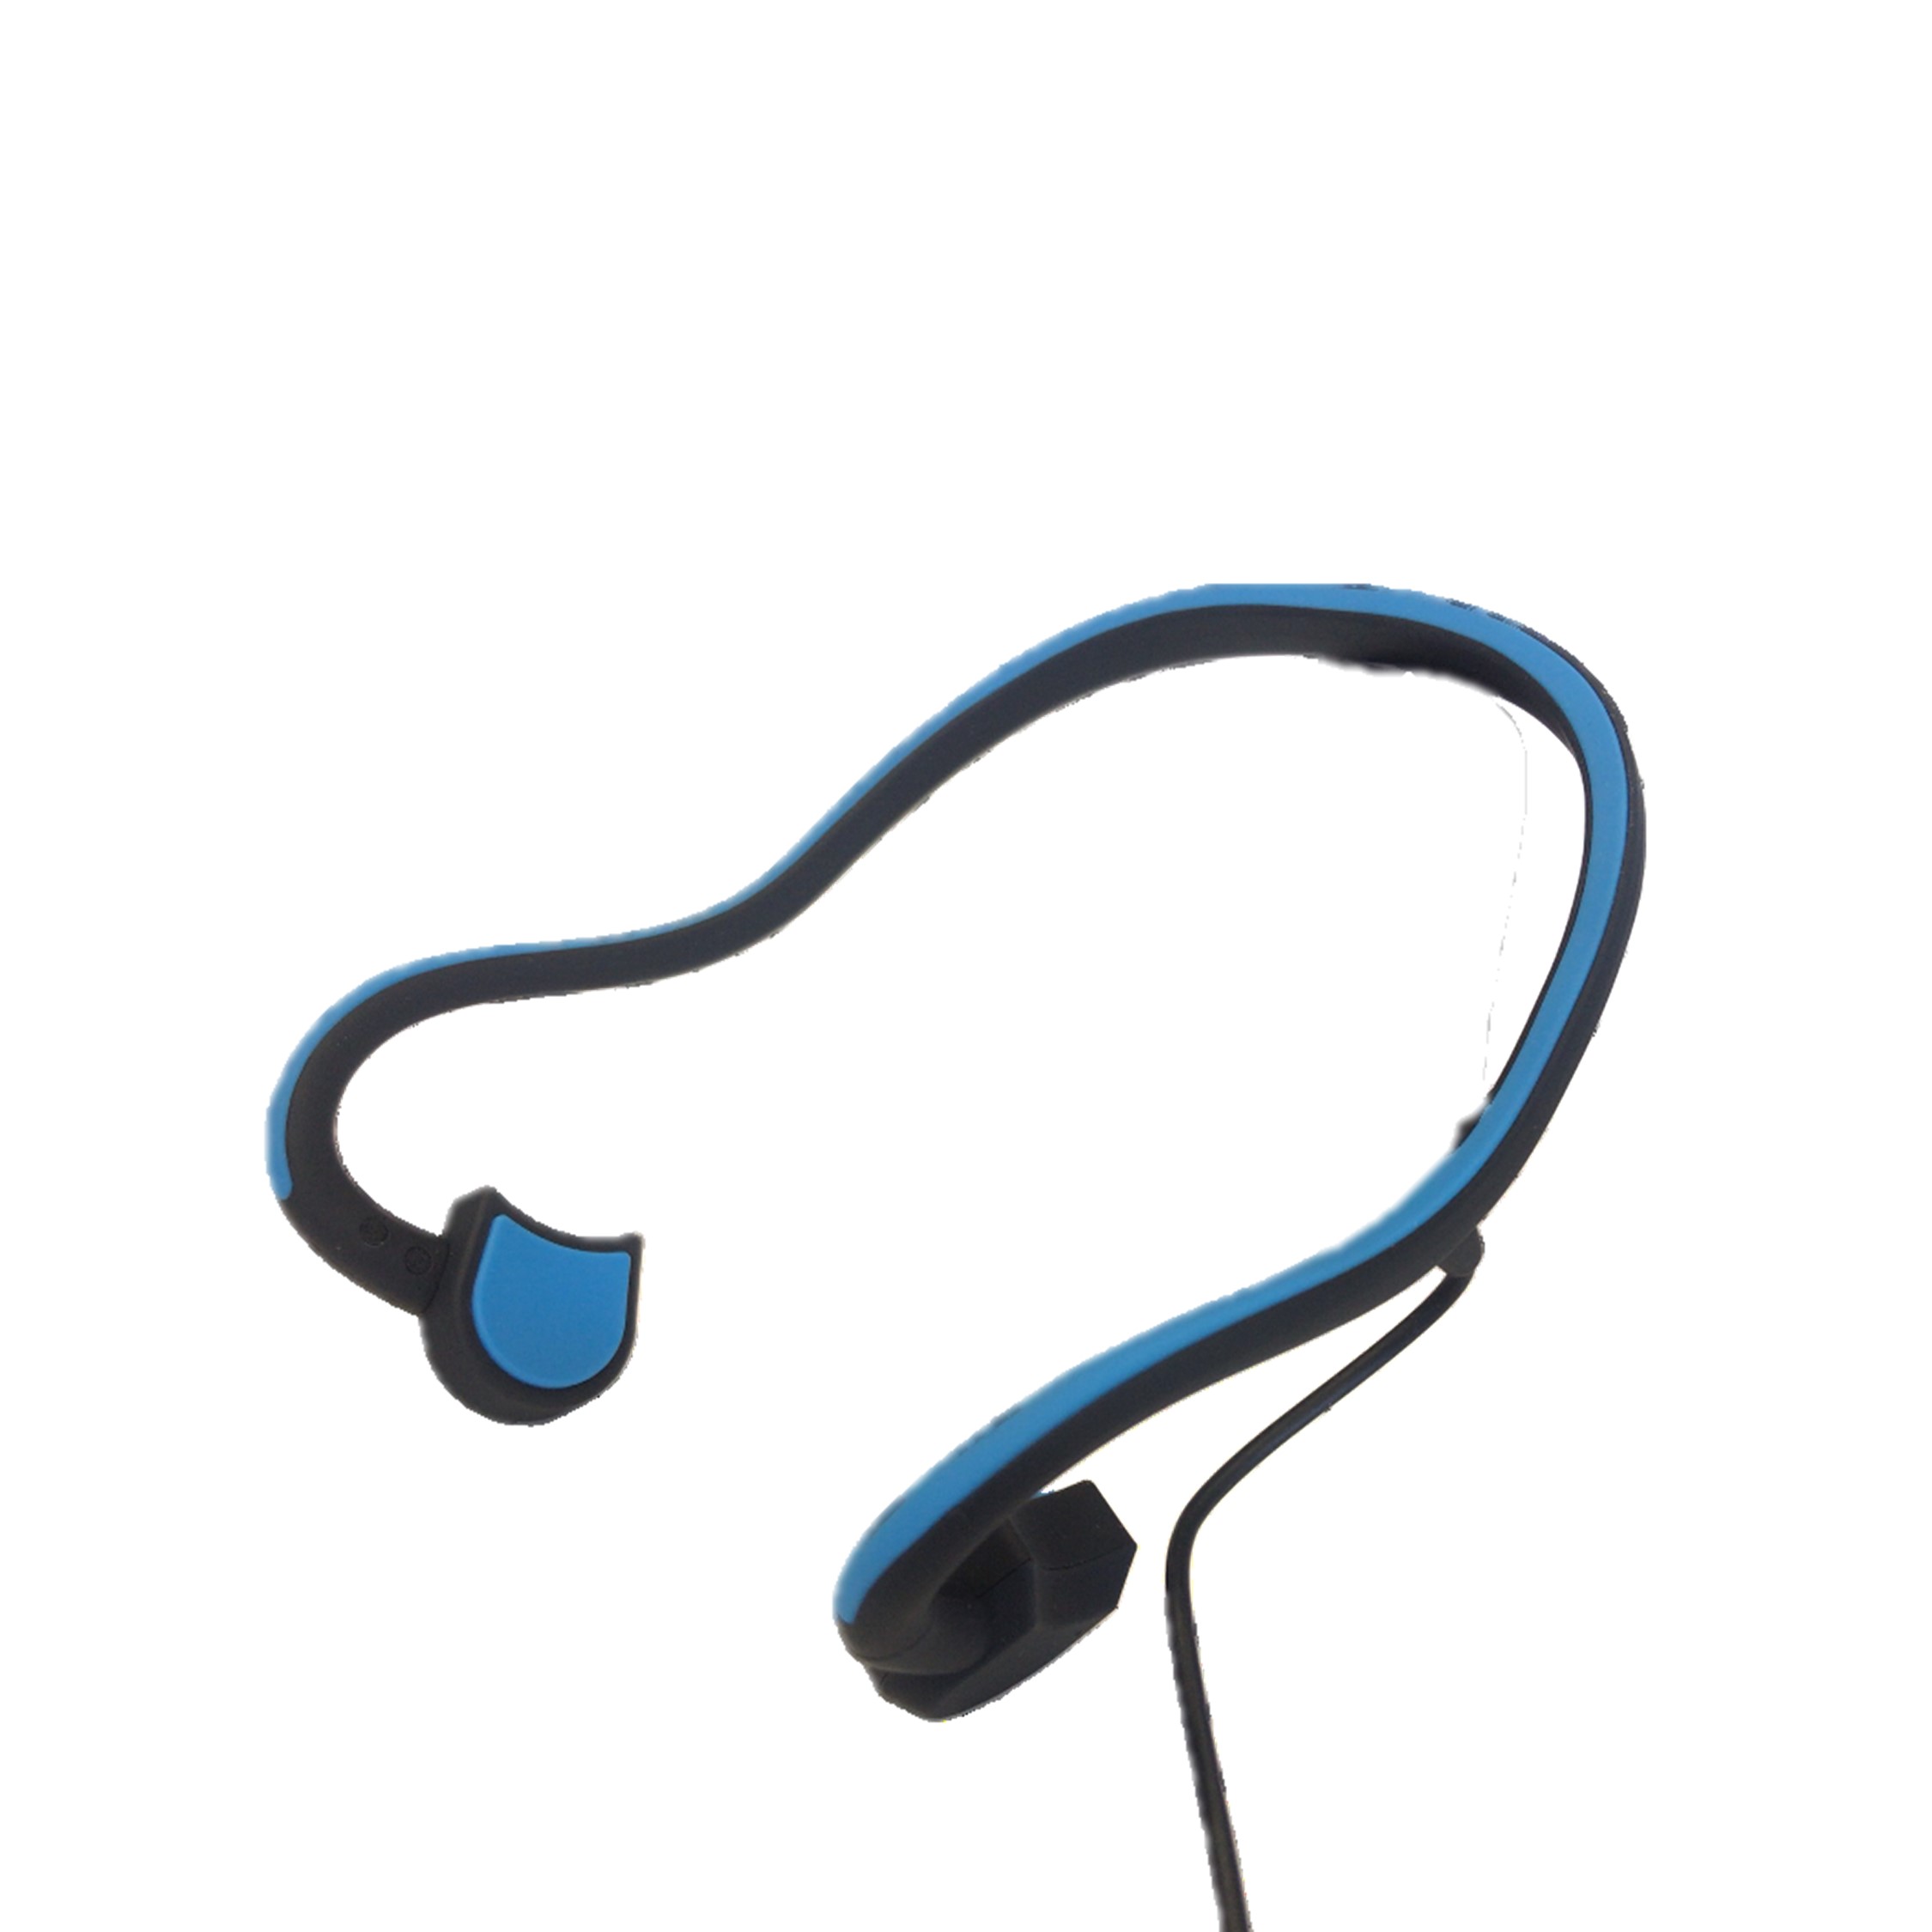 【スポーツの日キャンペーン】骨伝導イヤホン ブルー Bluetooth 軽量タイプ オープンイヤー 耳掛け式 eggBT